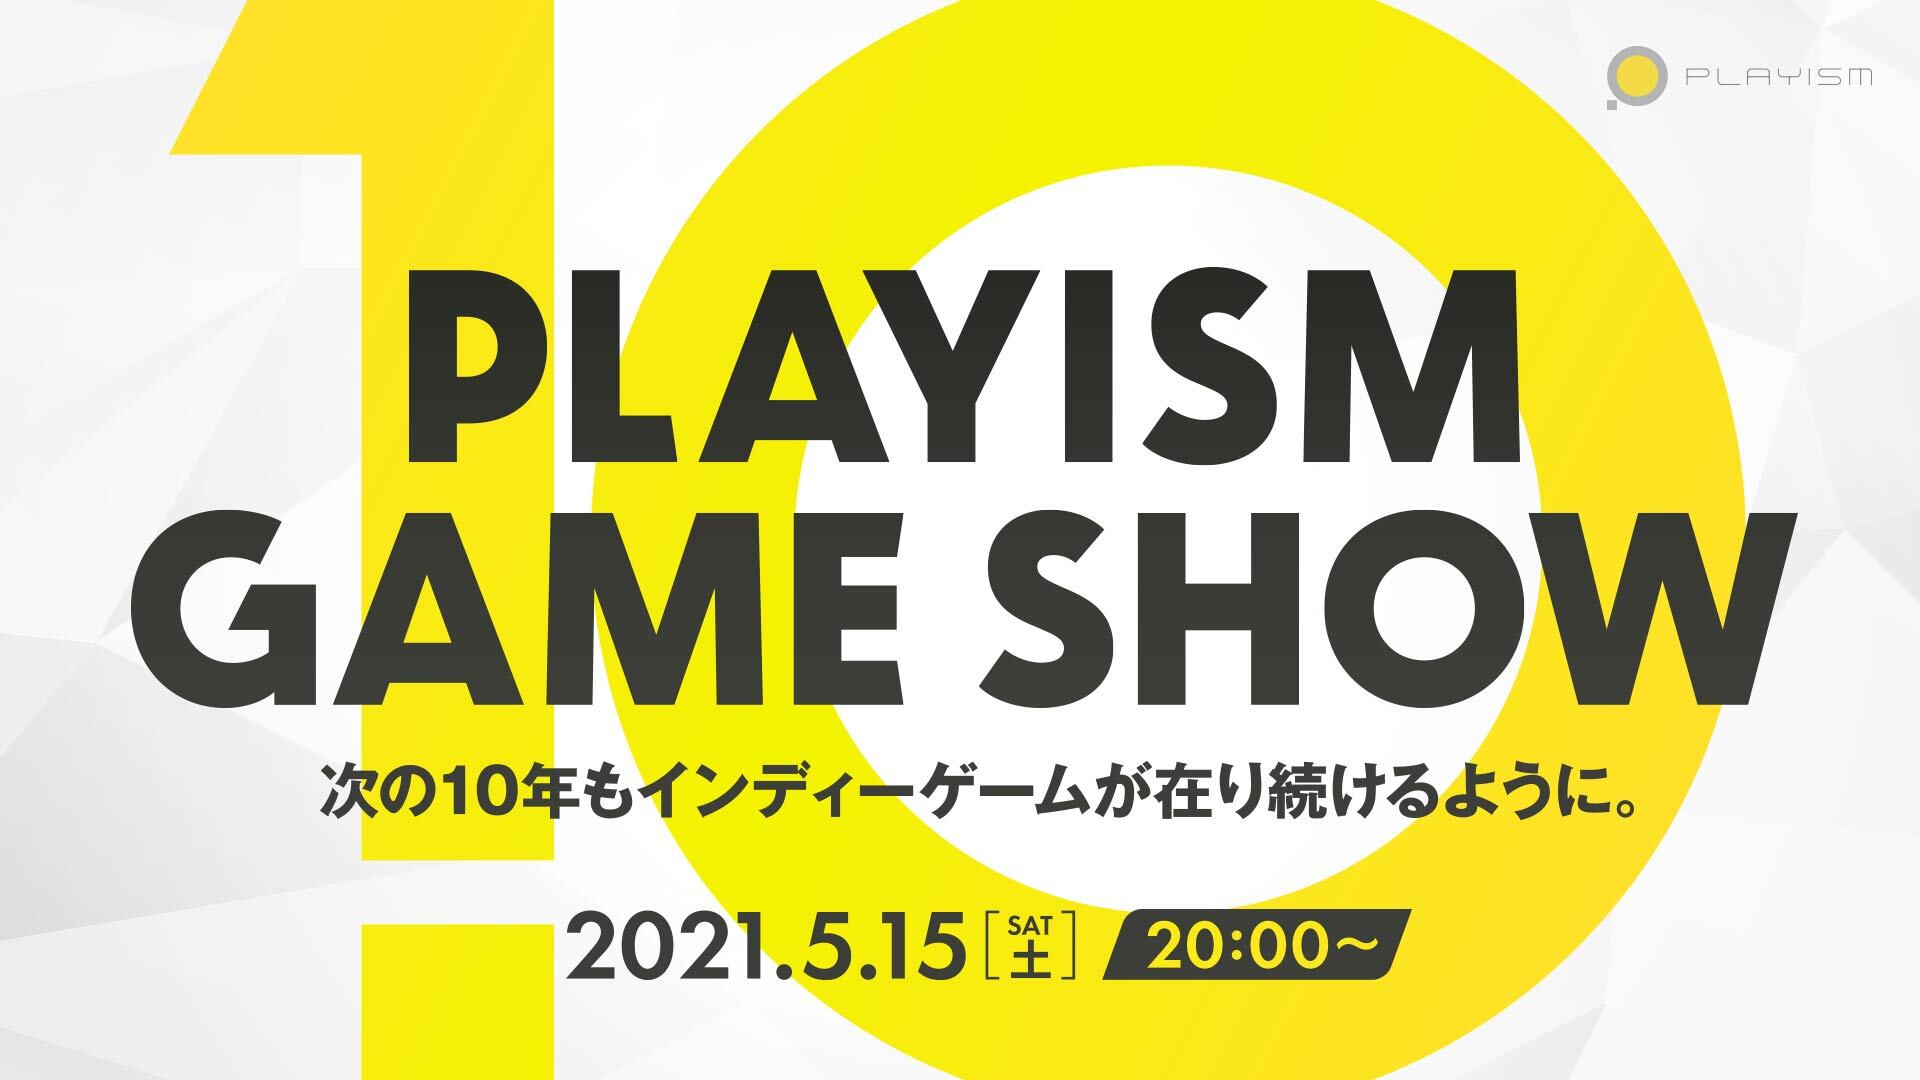 日本最大独游发行商PLAYISM十周年庆典5月15日举行